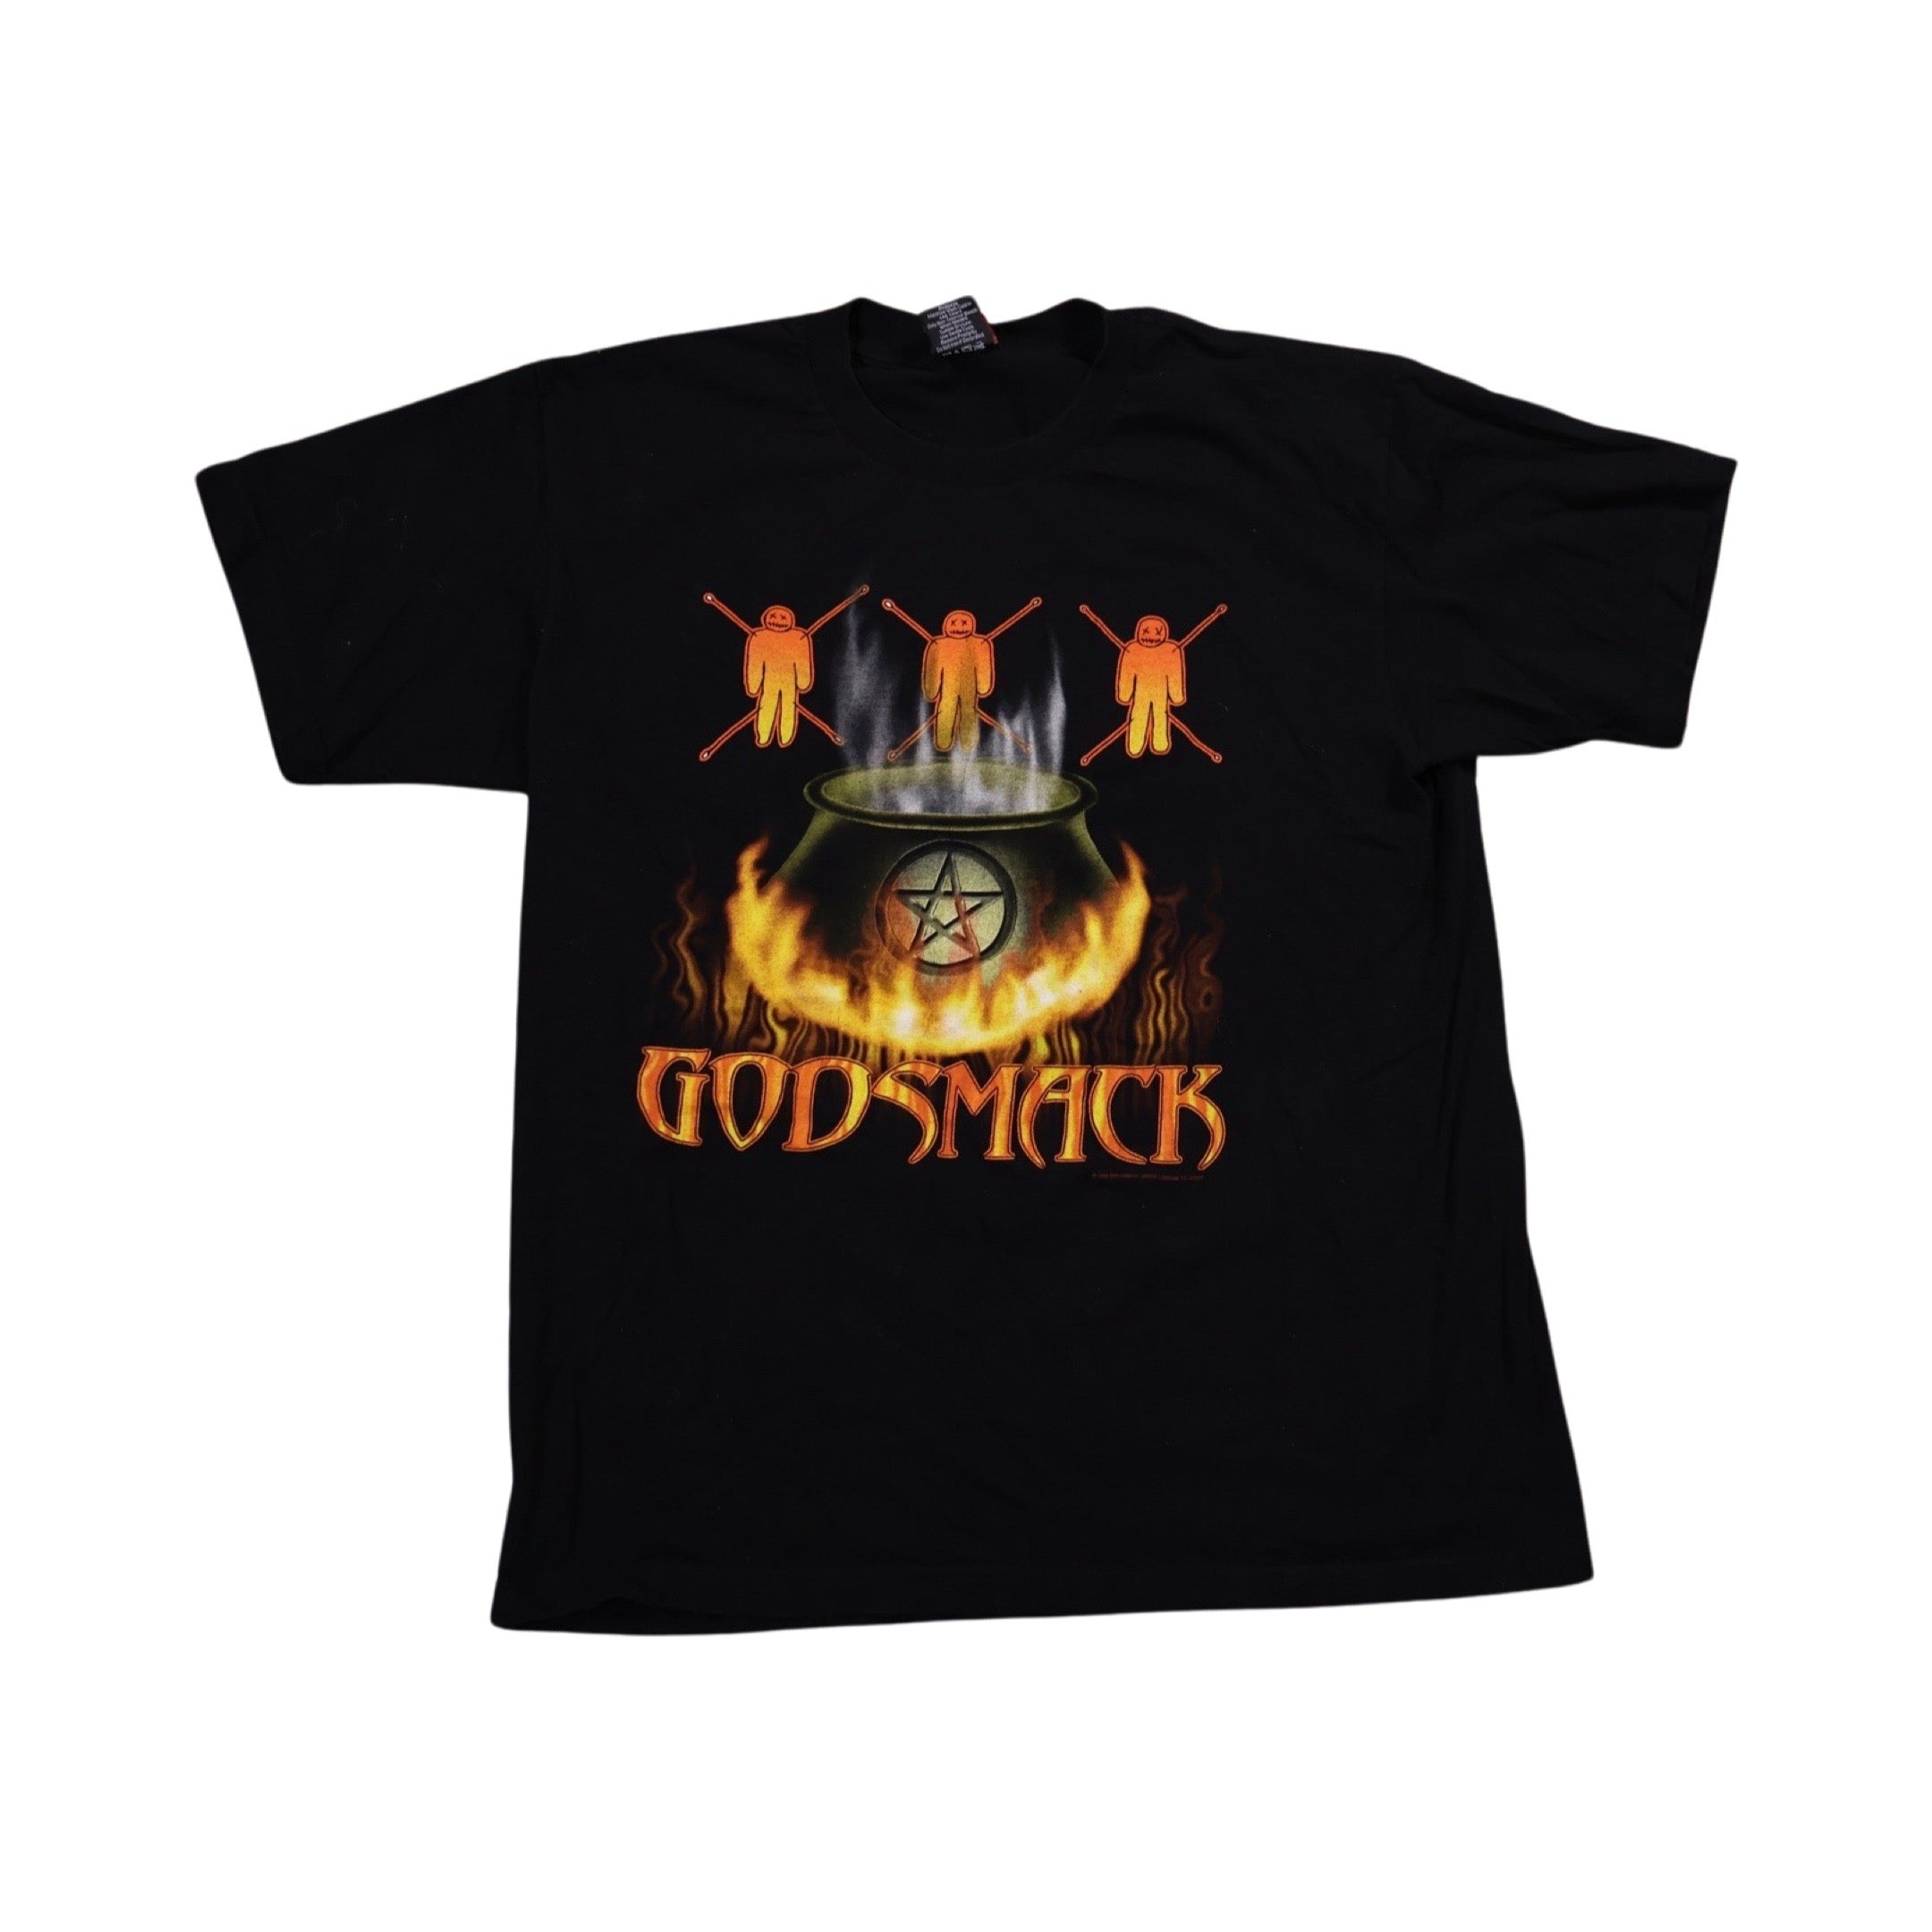 Godsmack 2000 T-Shirt (XL)